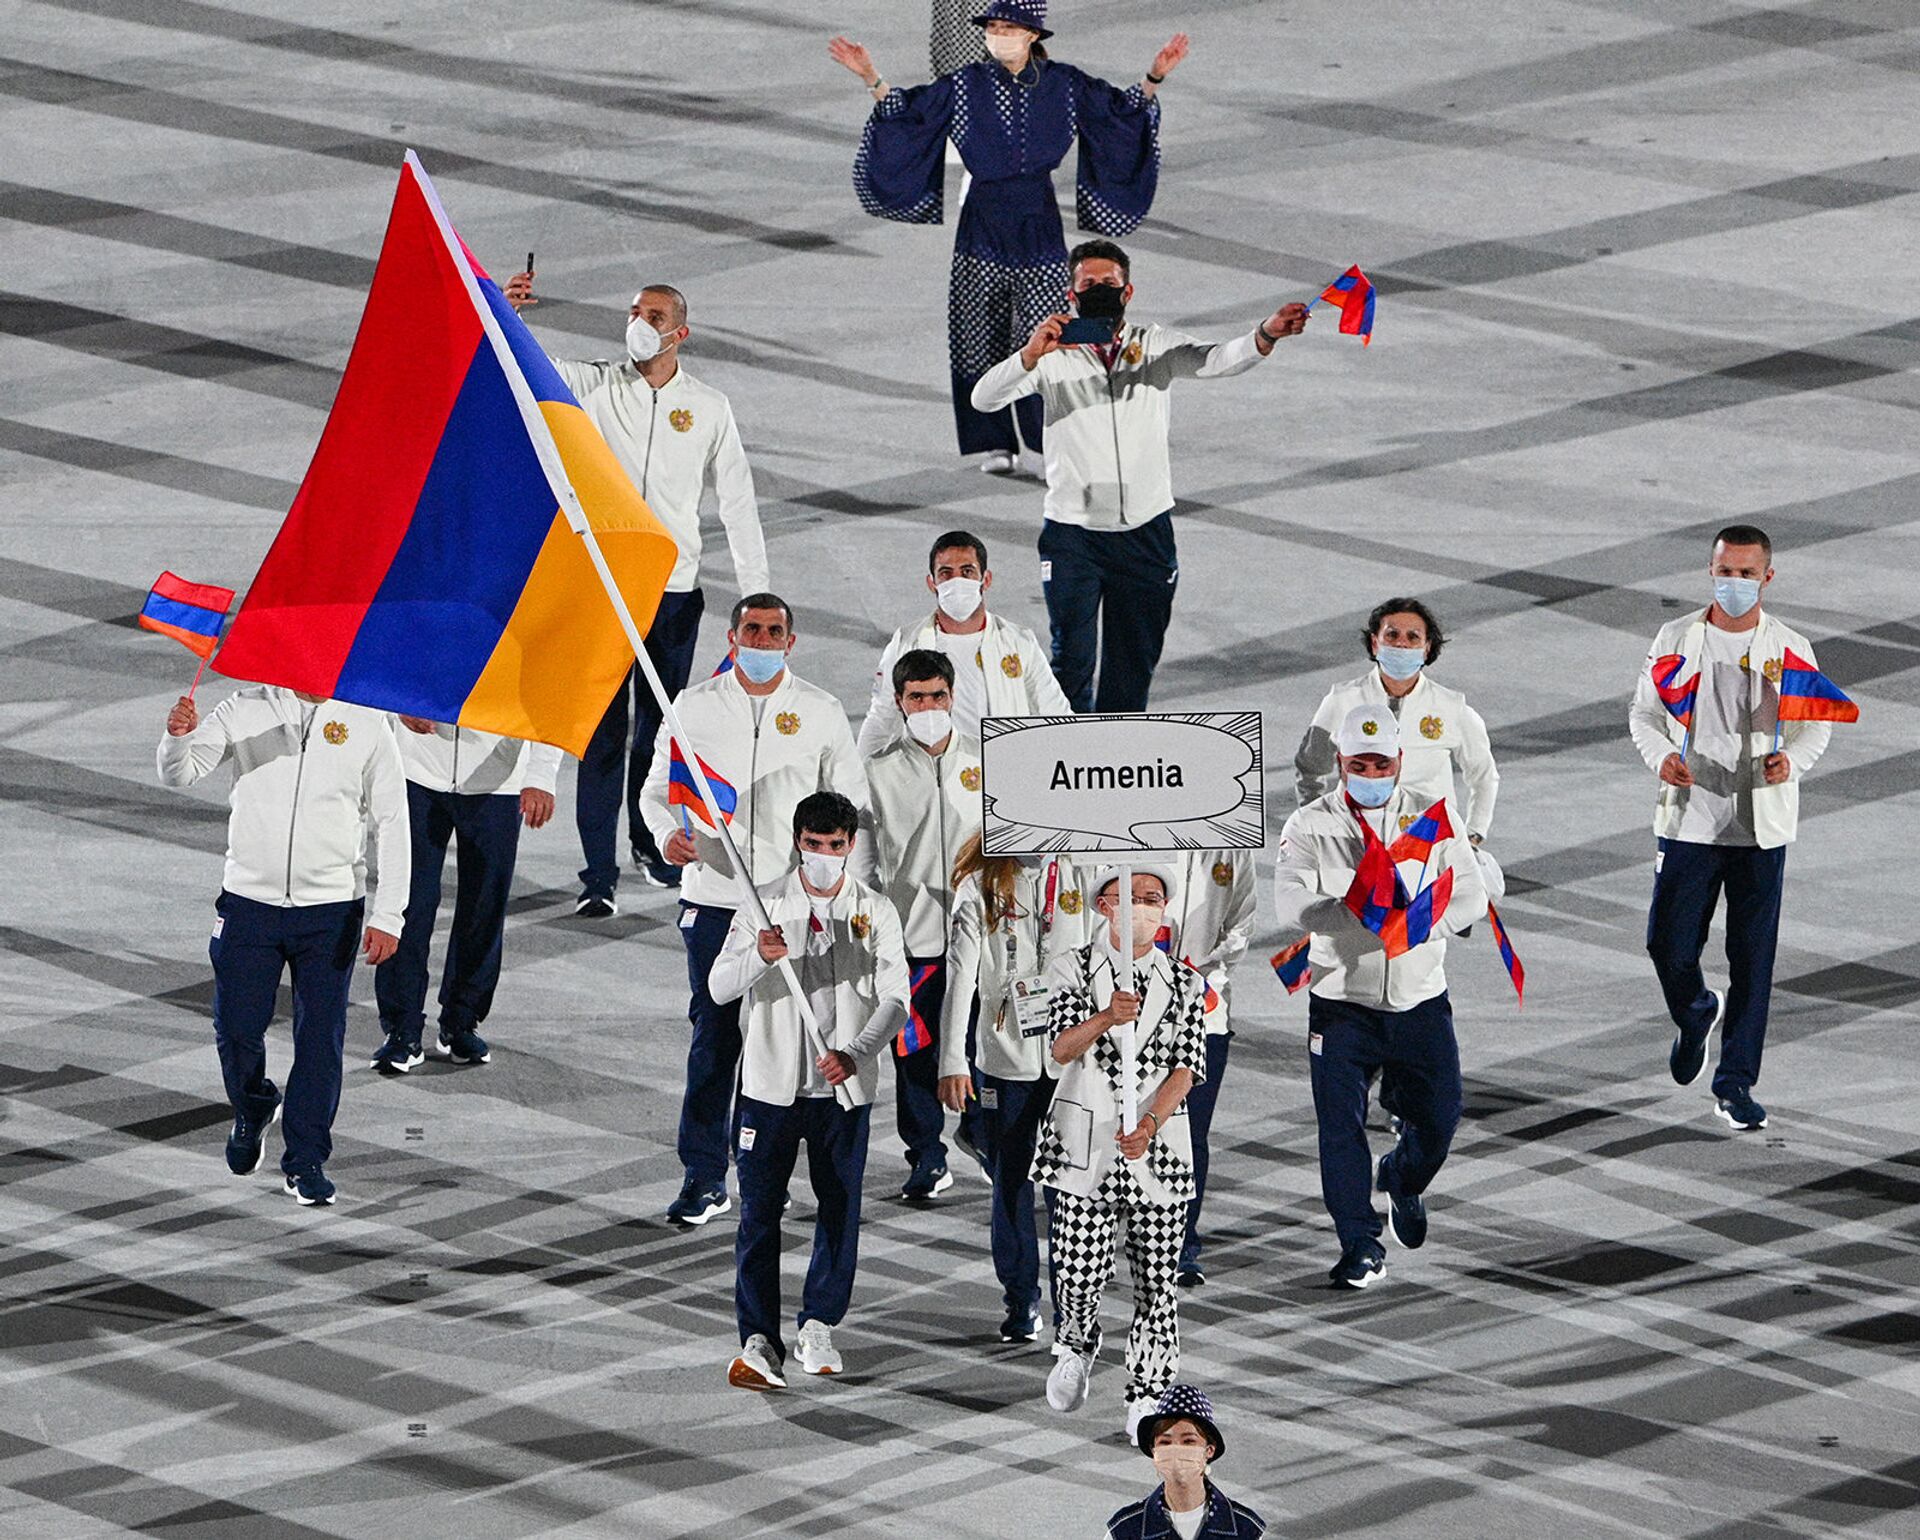 Եռագույնն ու հայ մարզիկները օլիմպիական խաղերի բացմանը. օրվա կադր - Sputnik Արմենիա, 1920, 23.07.2021